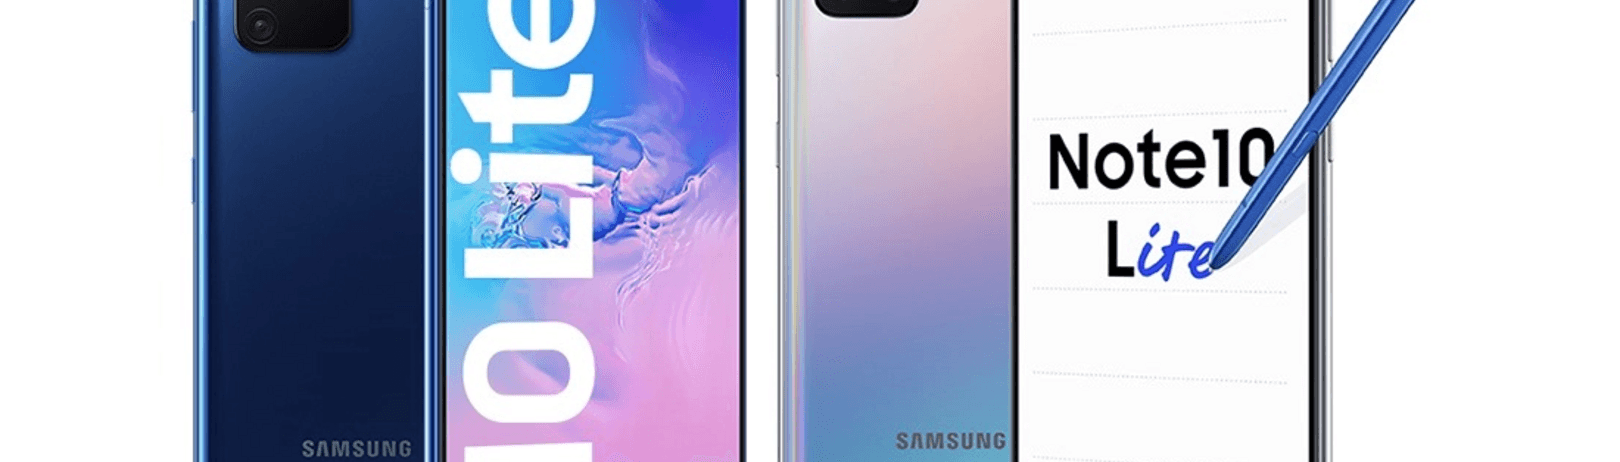 Veľké porovnanie Samsung Galaxy S10 Lite a Note 10 Lite